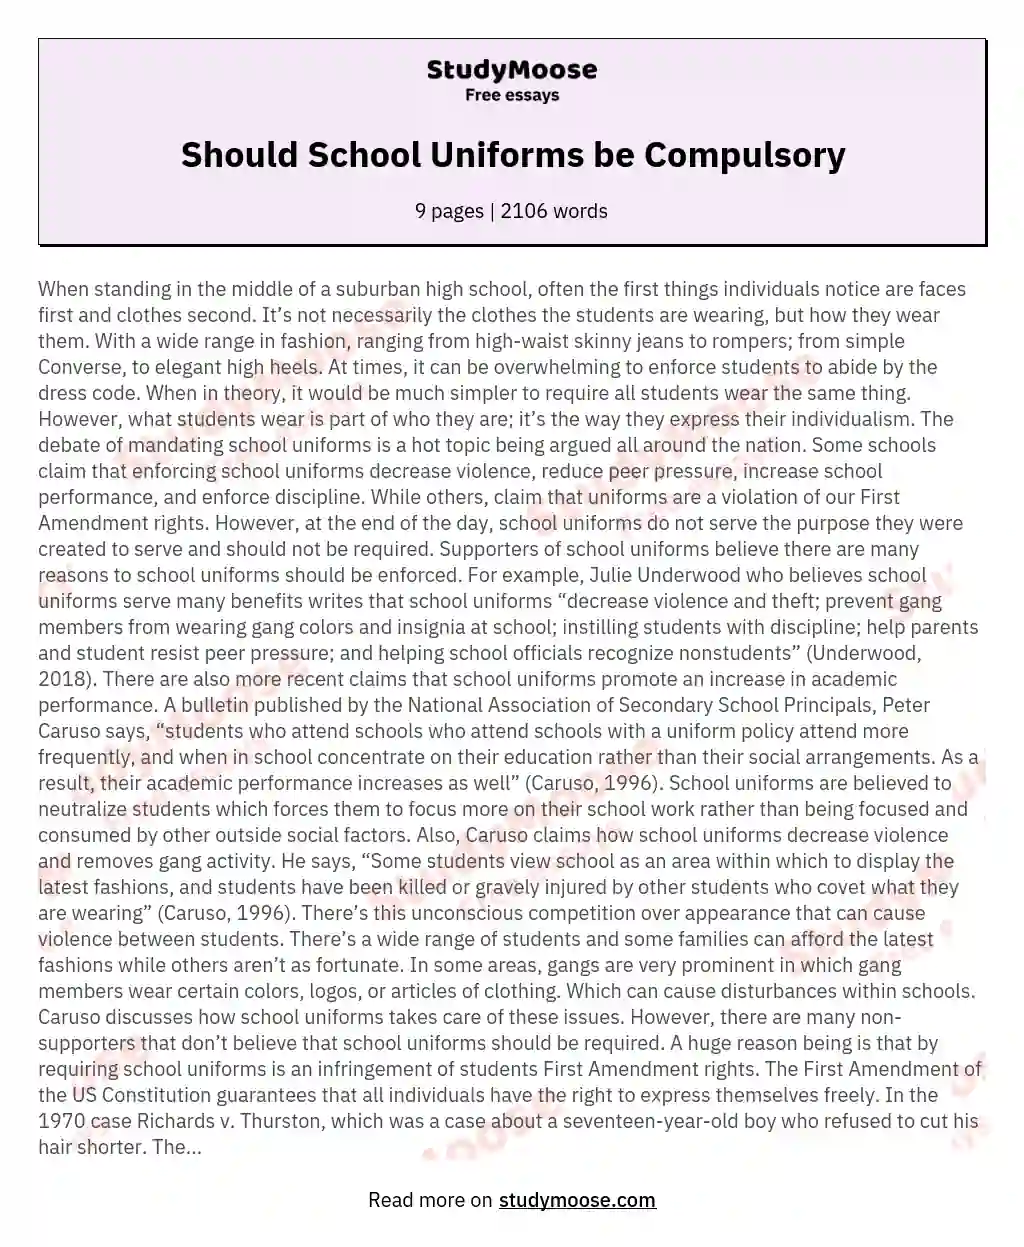 Should School Uniforms be Compulsory